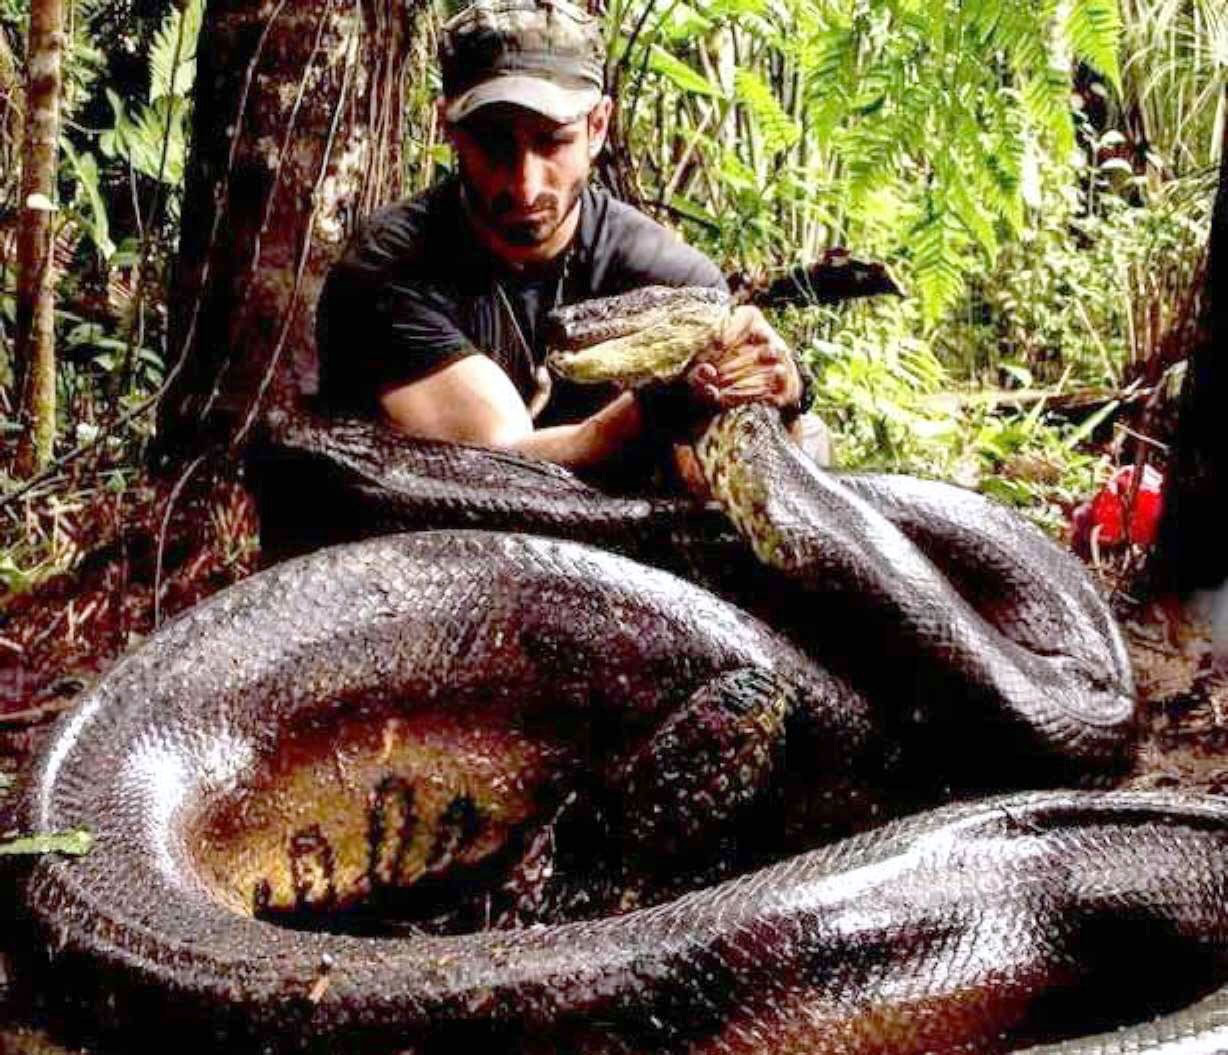 捕食鳄鱼的蛇类—森蚺 - 蟒蛇科普